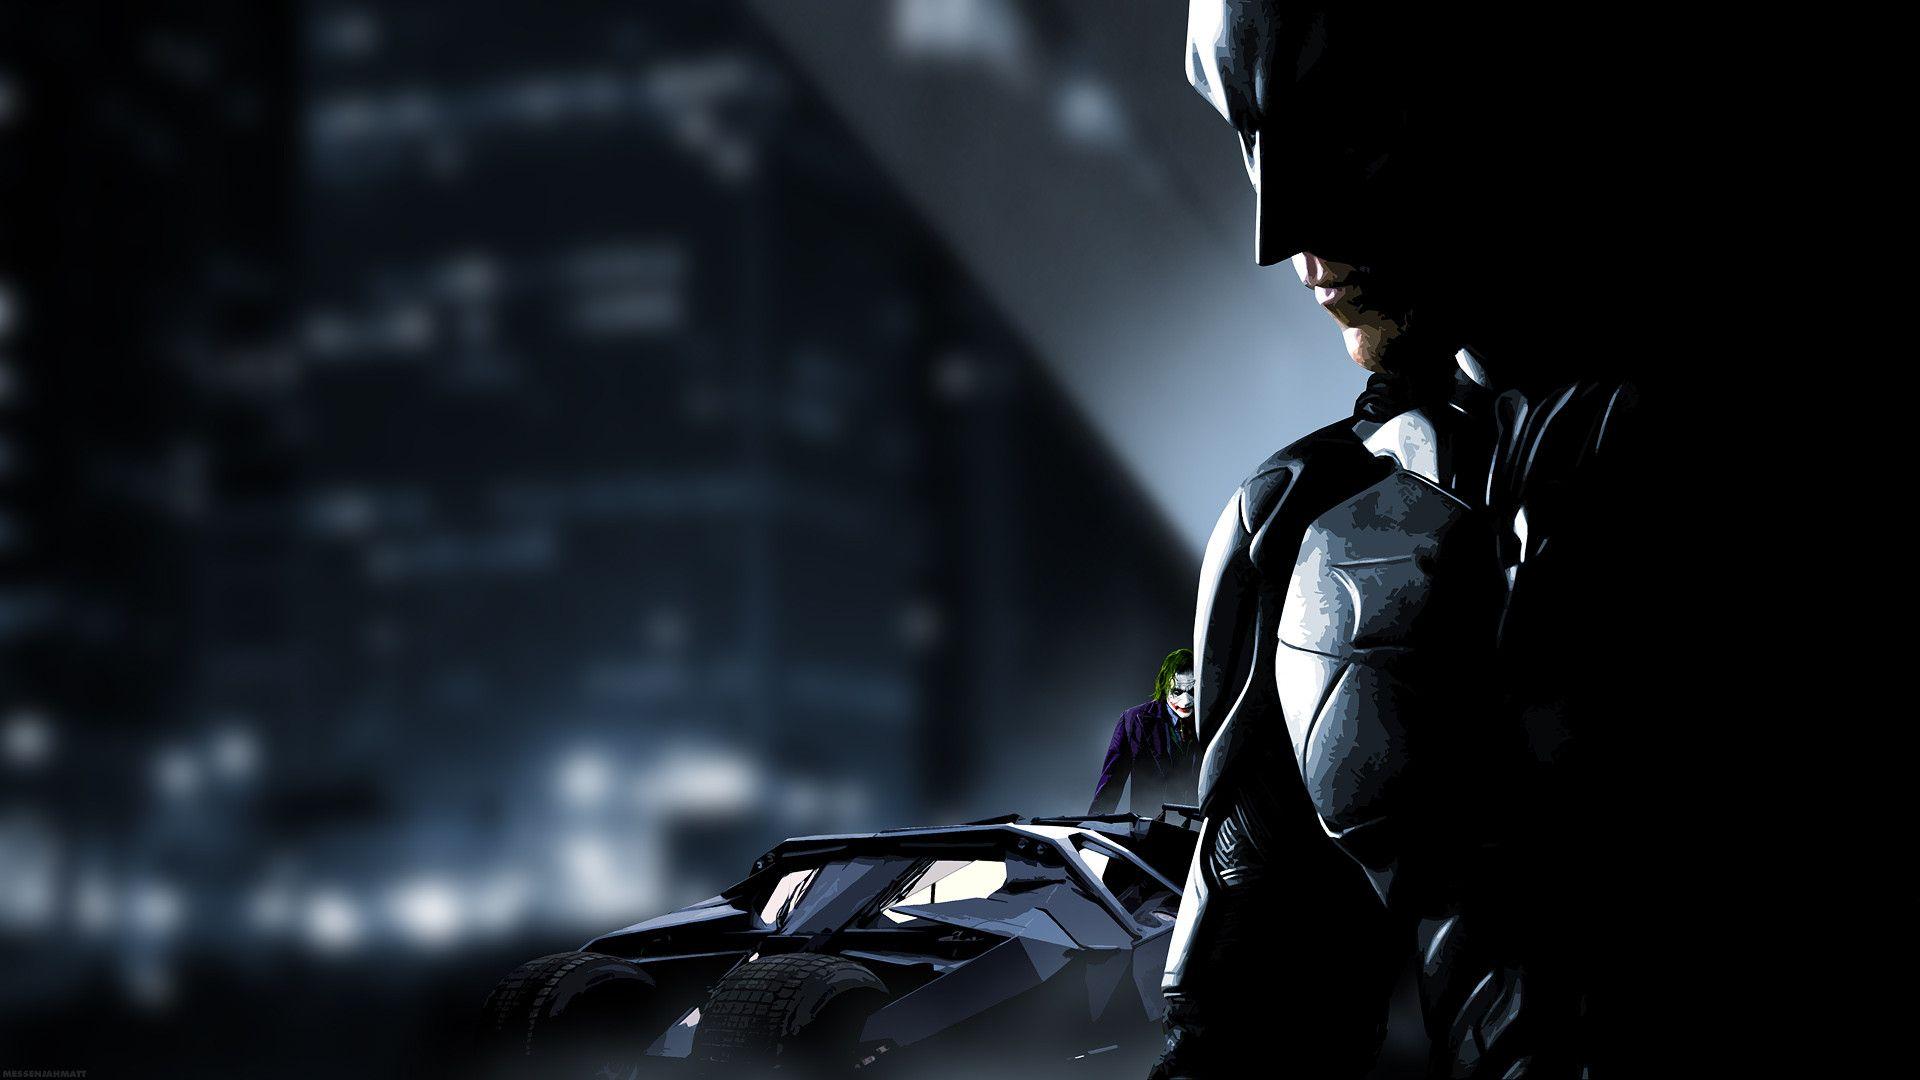 Batman The Dark Knight Wallpaper Gallery EN download. HD